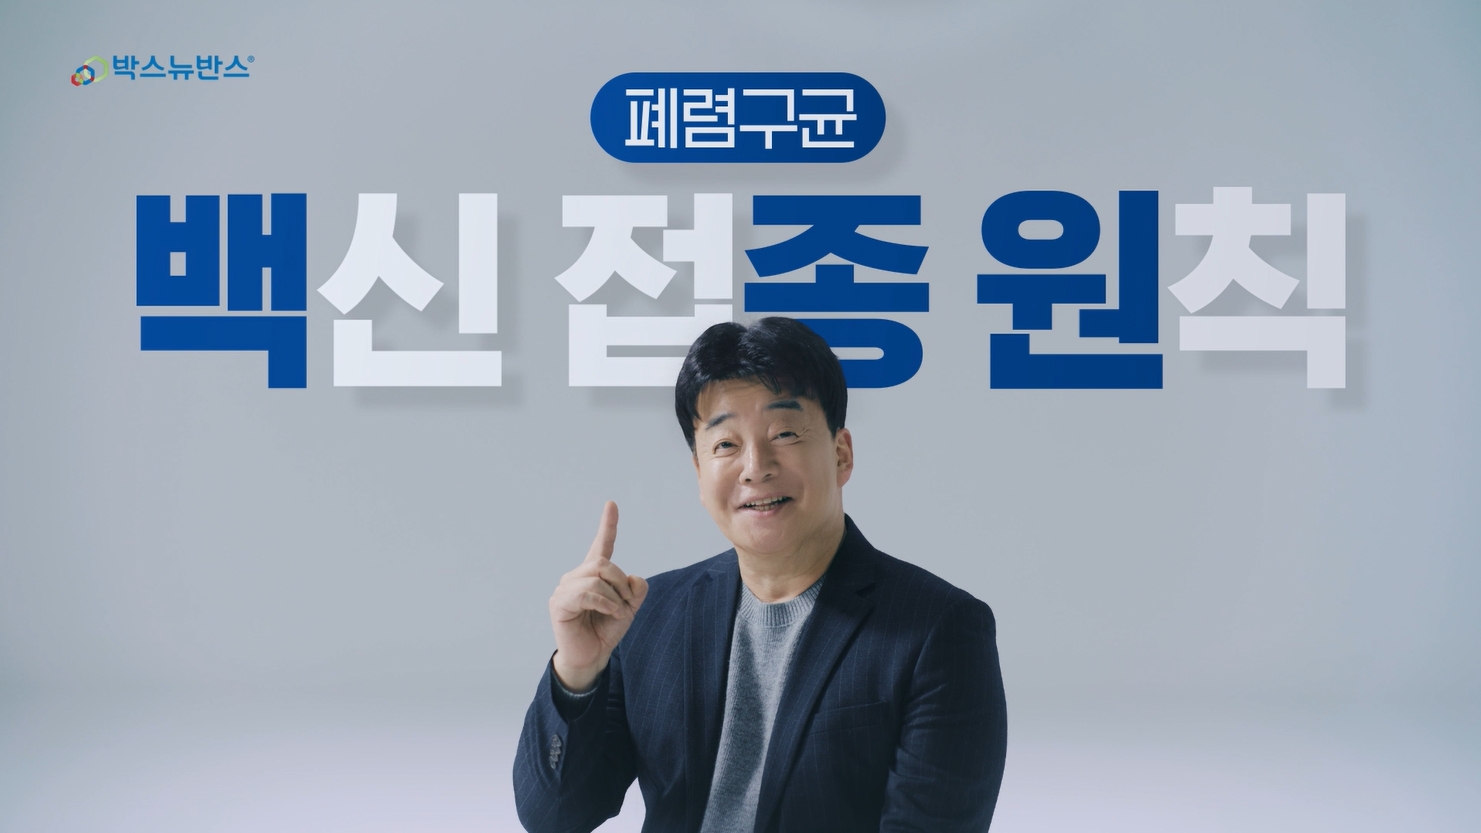 한국MSD, 폐렴구균 백신 ‘박스뉴반스’ 새 광고 모델 백종원 선정